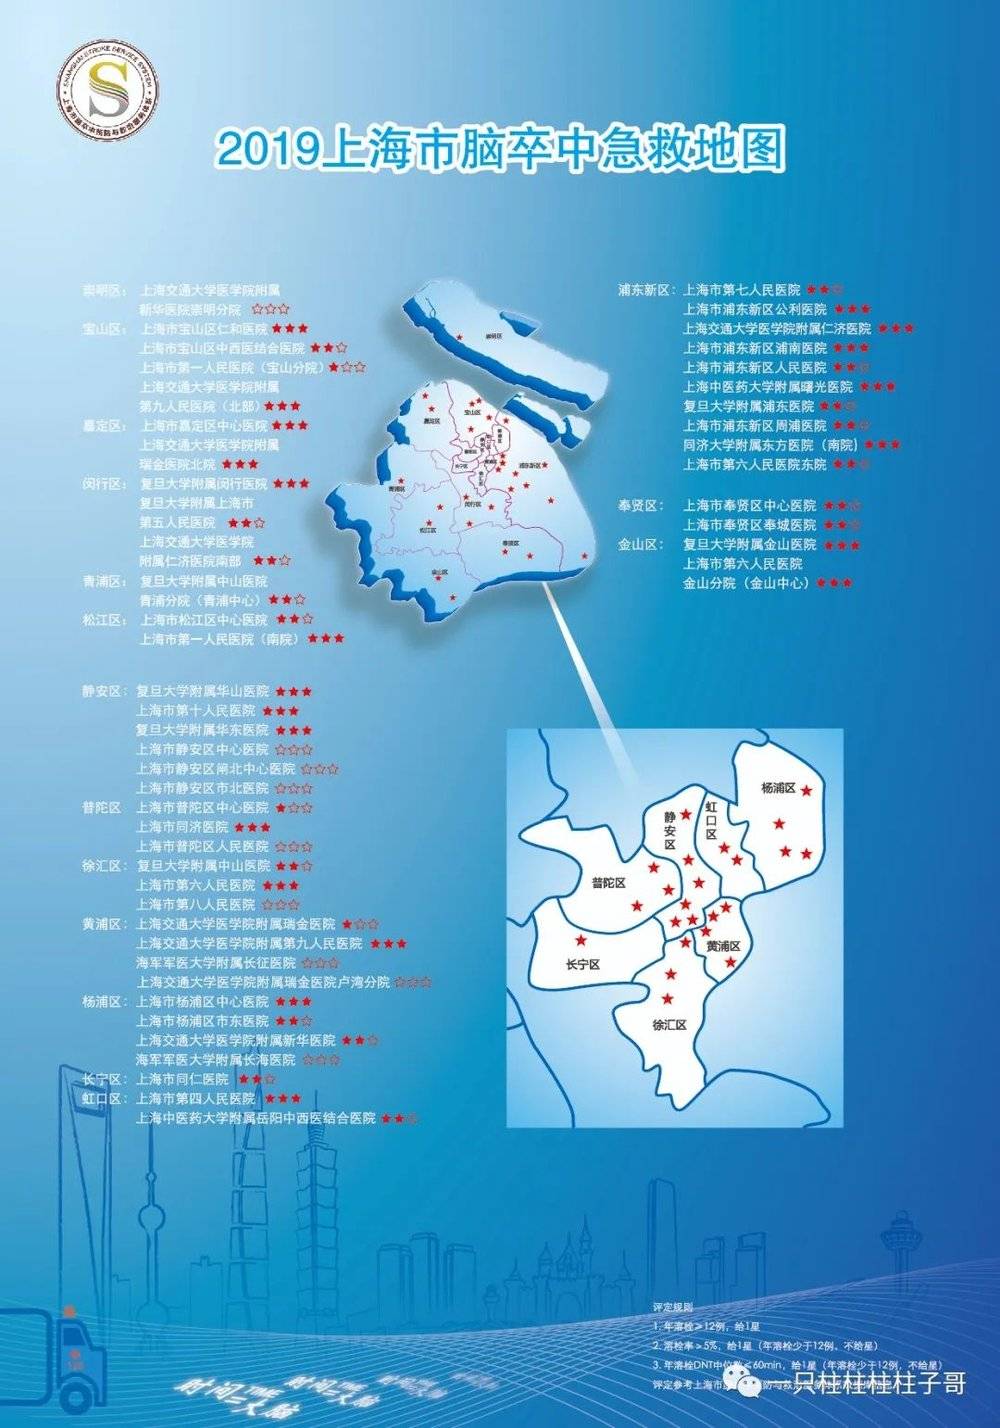 图为上海市2019年脑卒中急救地图<br>